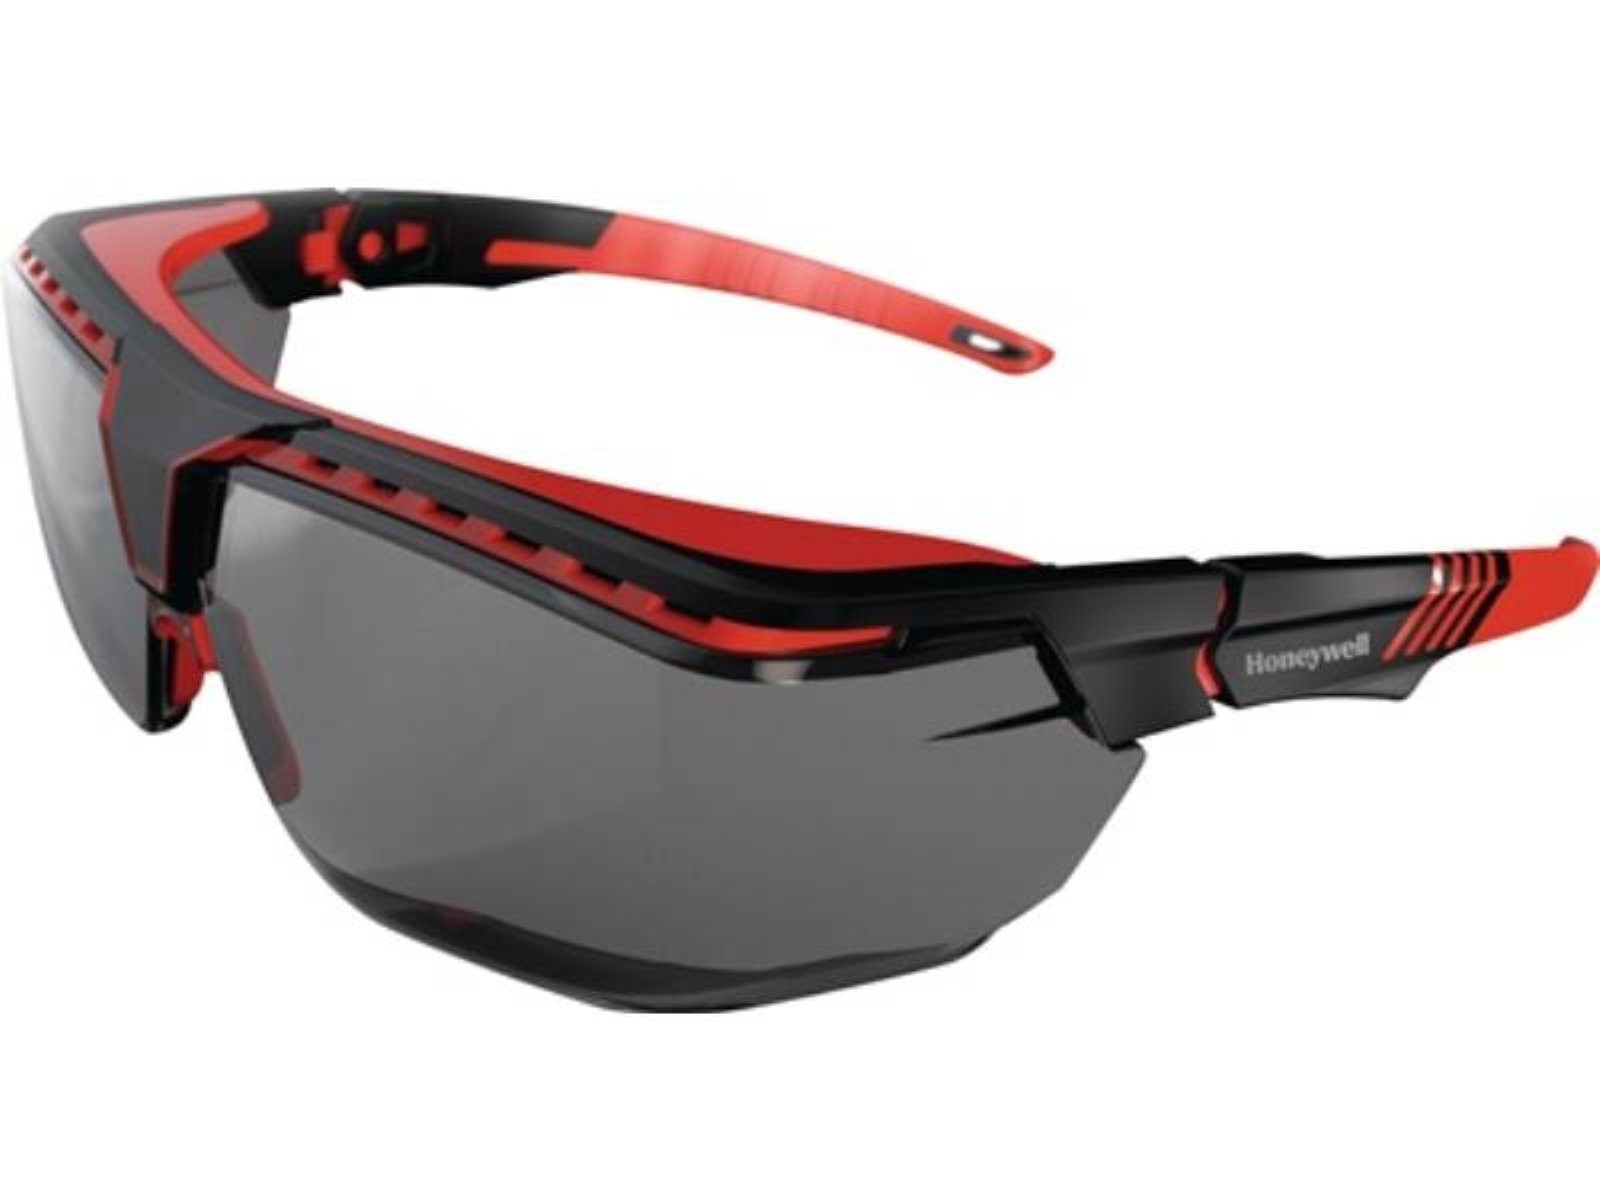 Honeywell Arbeitsschutzbrille Schutzbrille Avatar OTG Bügel schwarz/rot,Scheibe grau PC HONEYWELL d